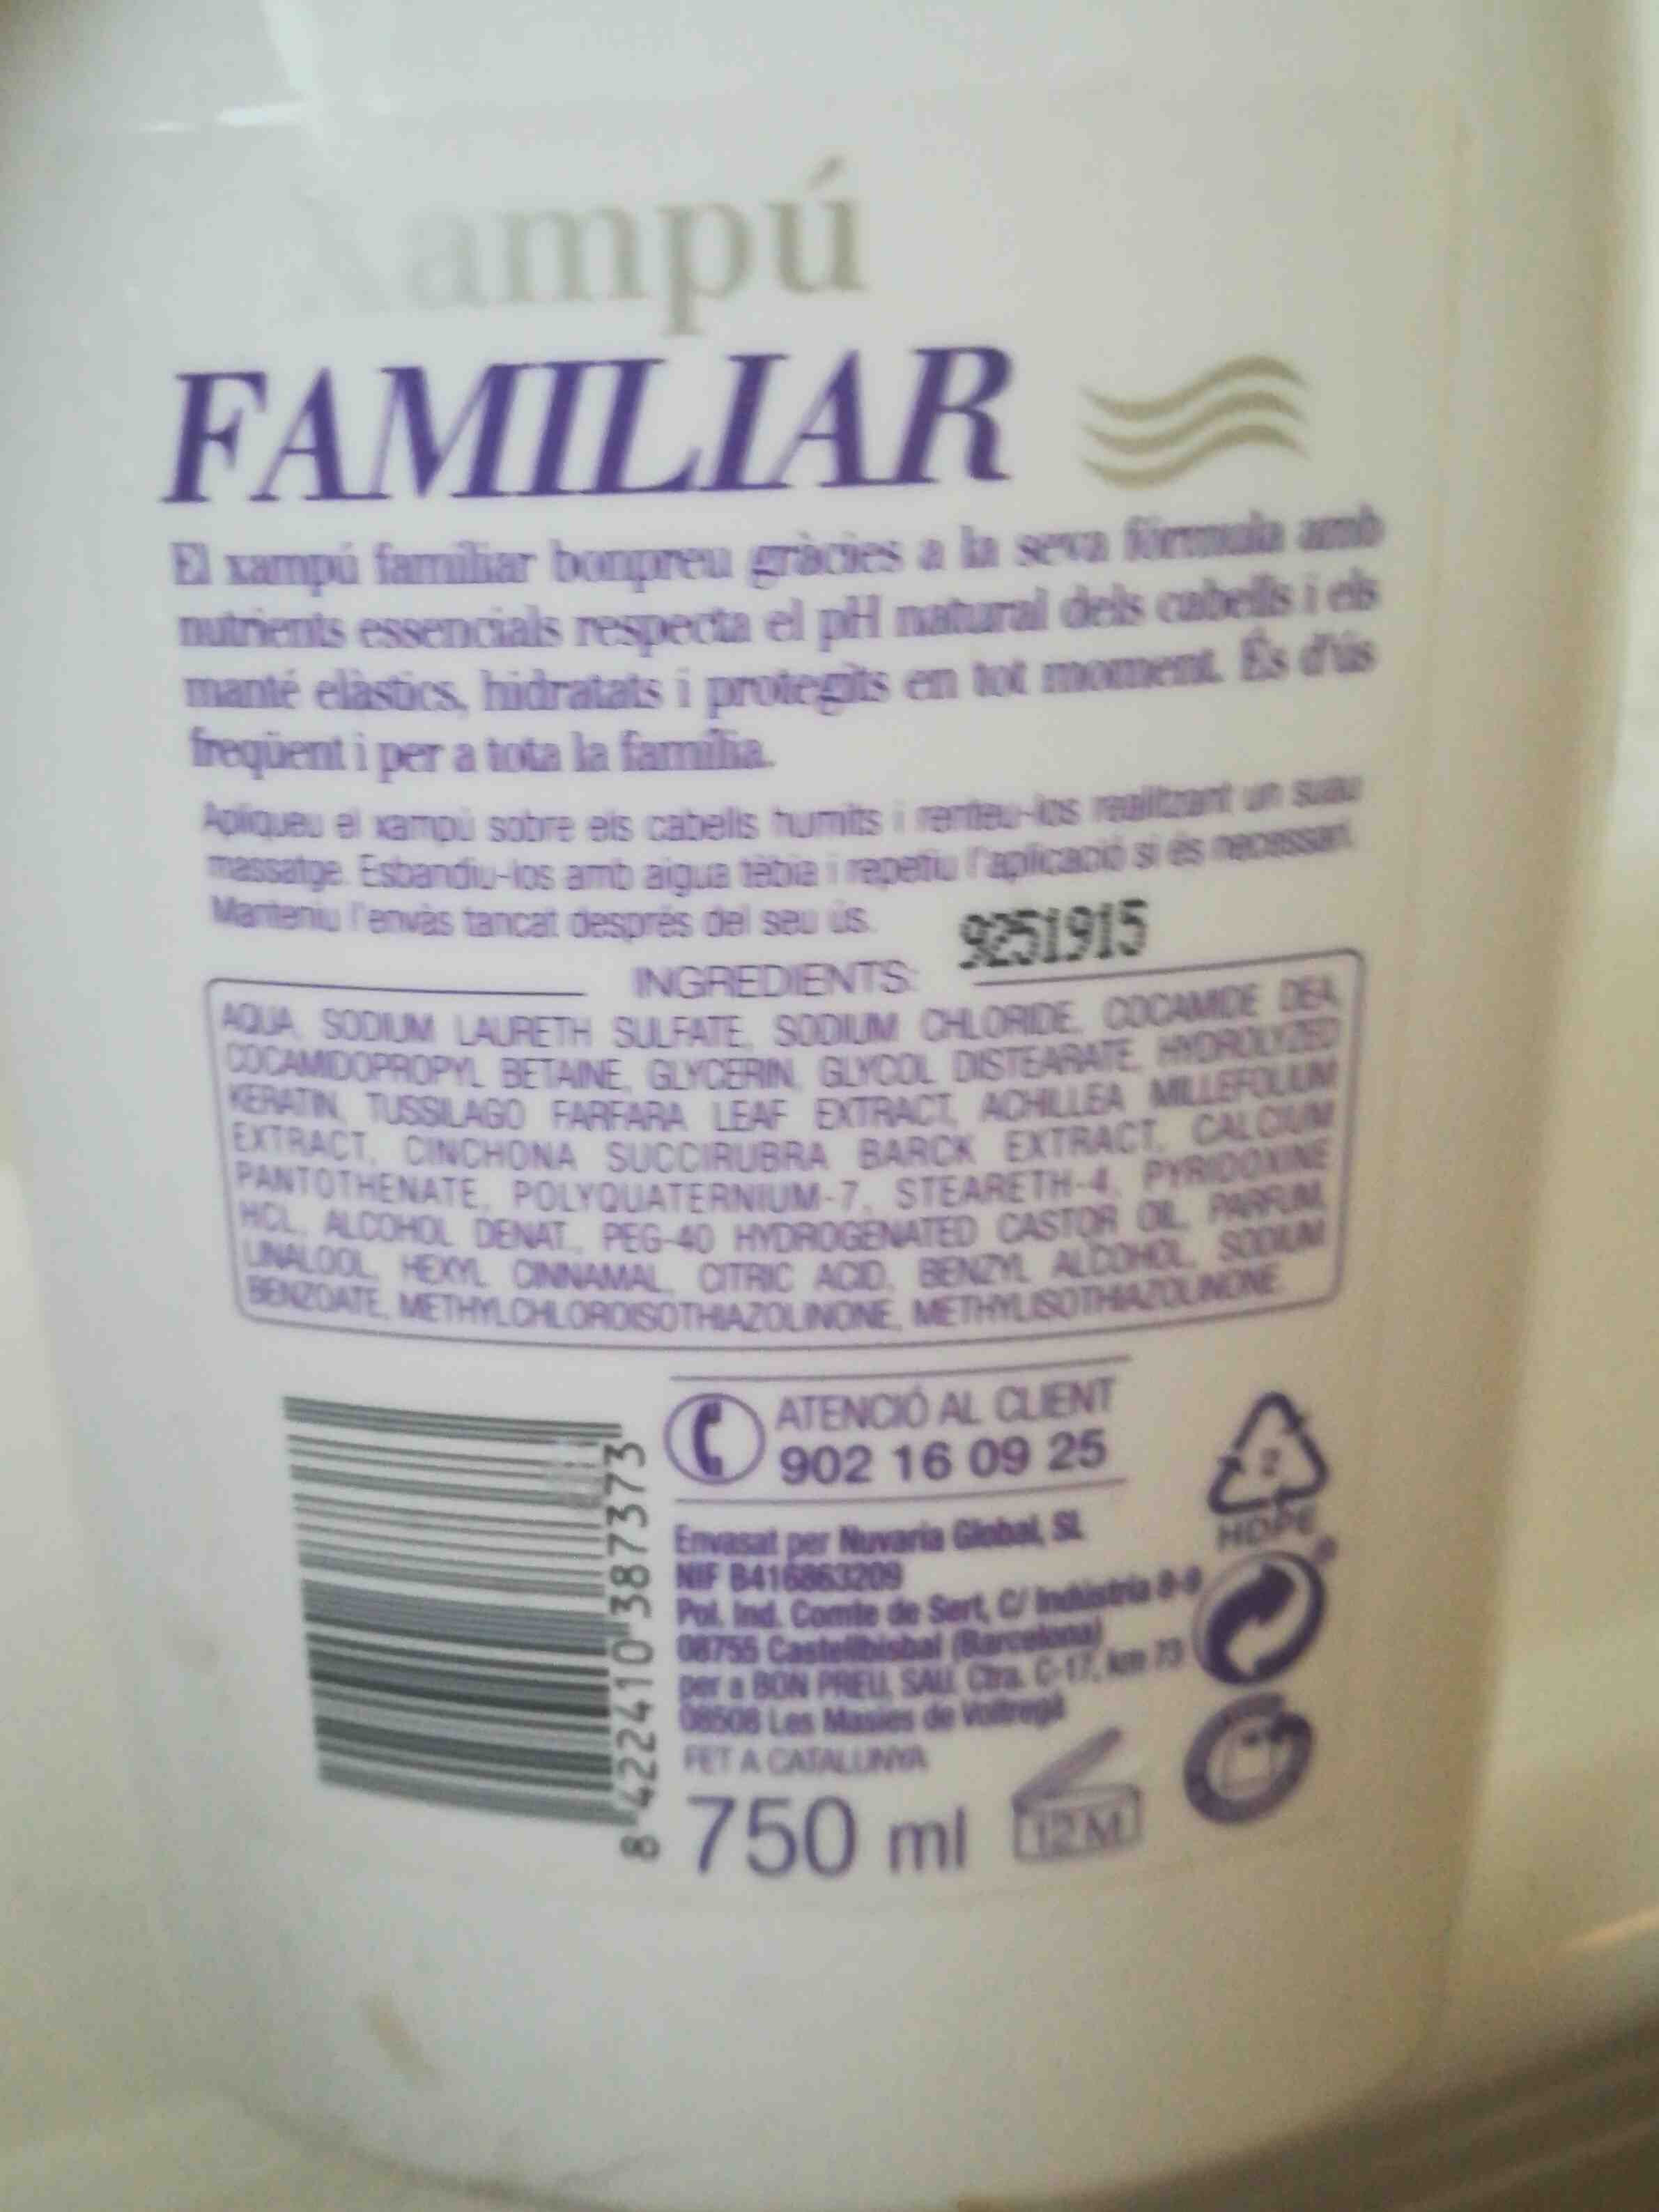 Xampu familiar bon preu - Ingredients - en